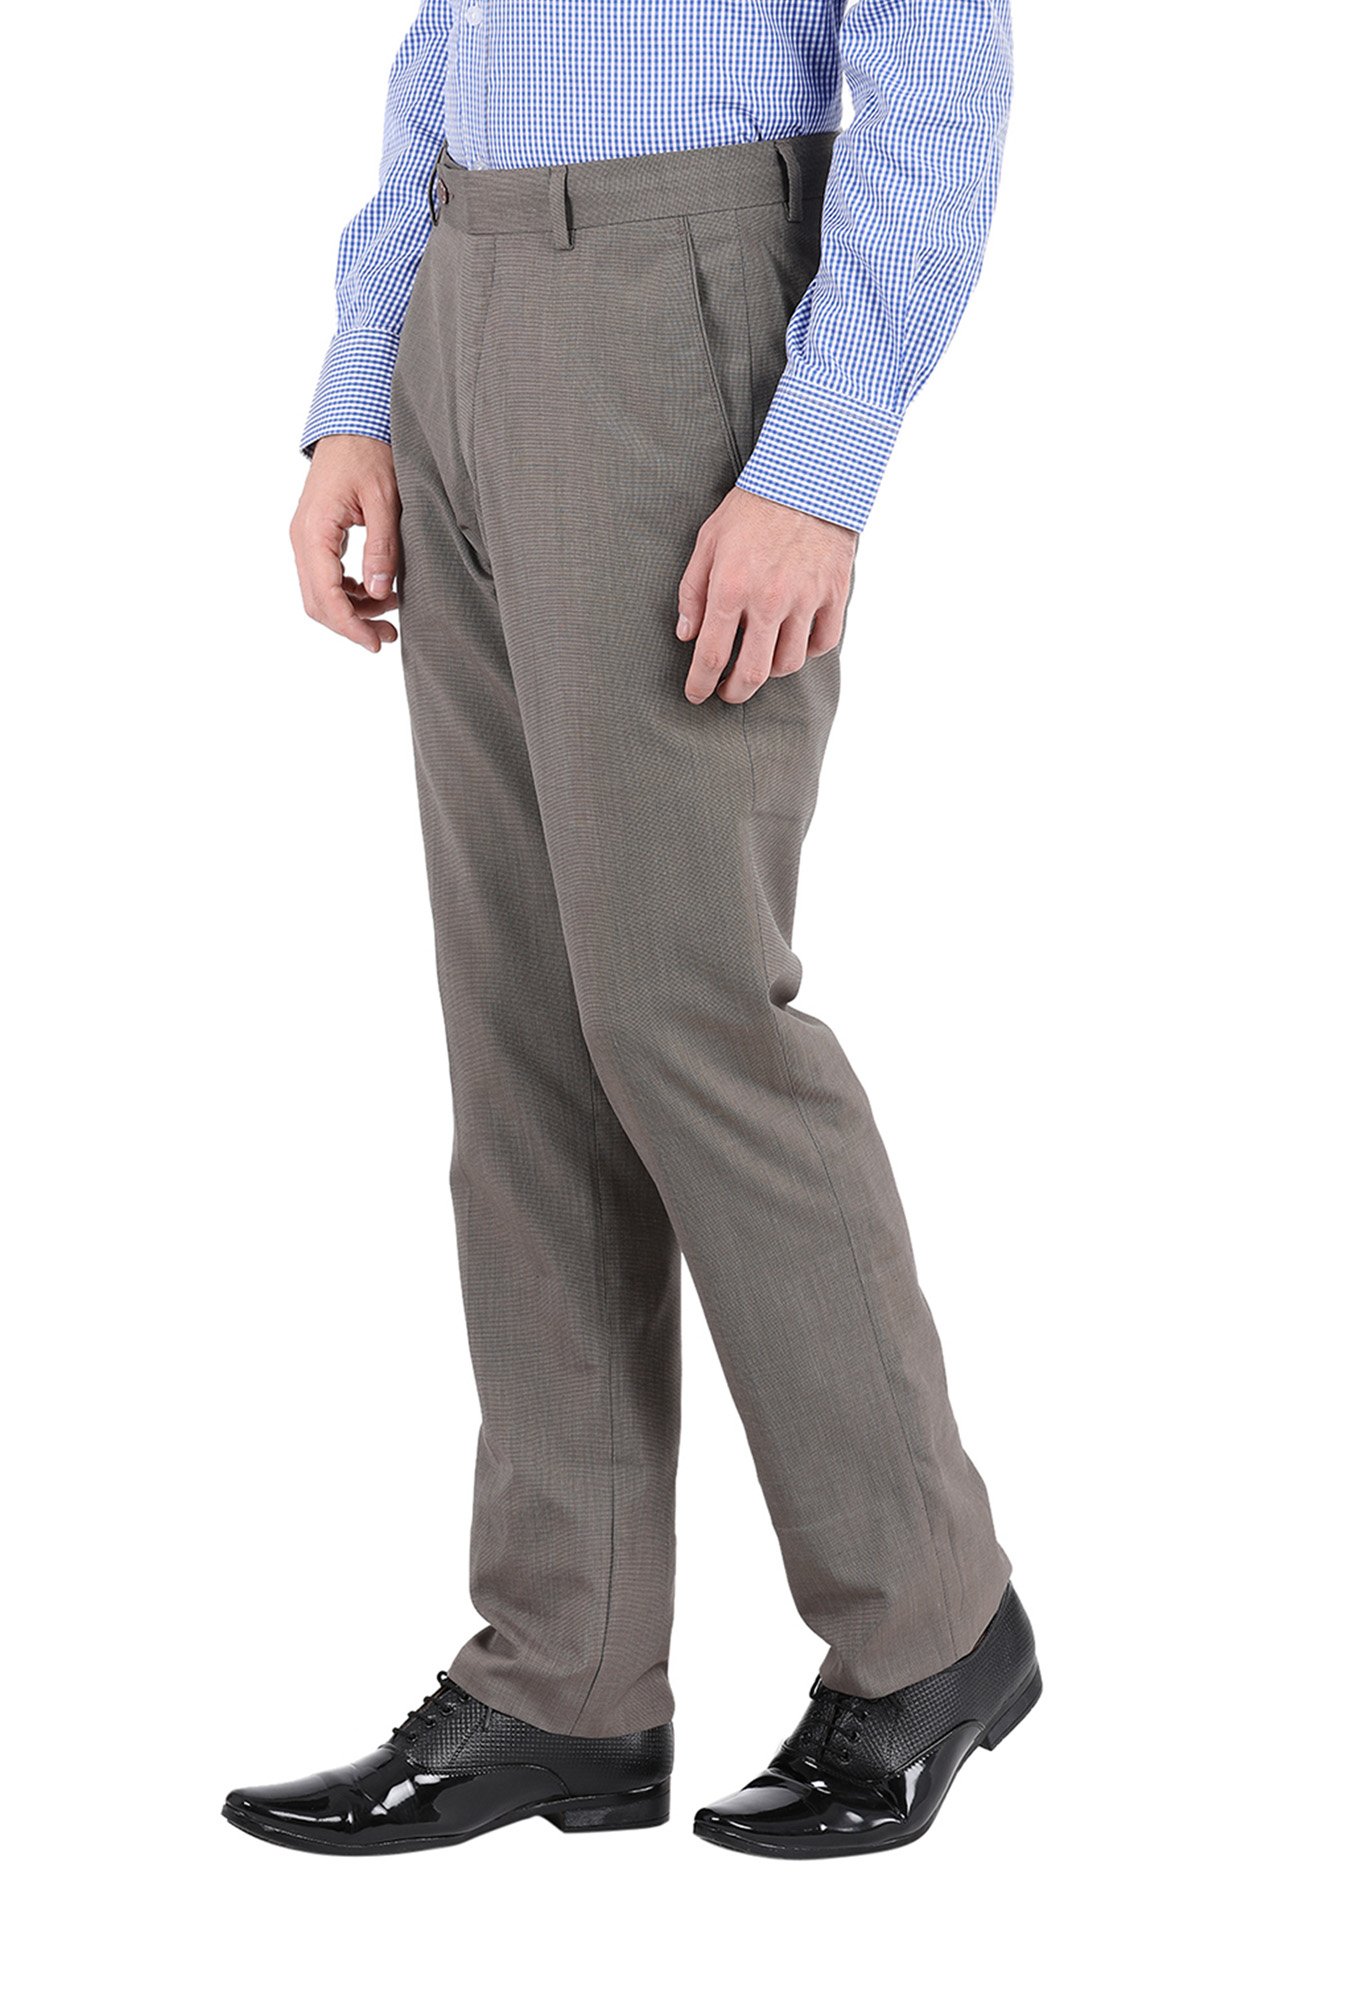 John Player trouser and Branded shirt for men  flipkart shopping  big  billion days  best price  YouTube